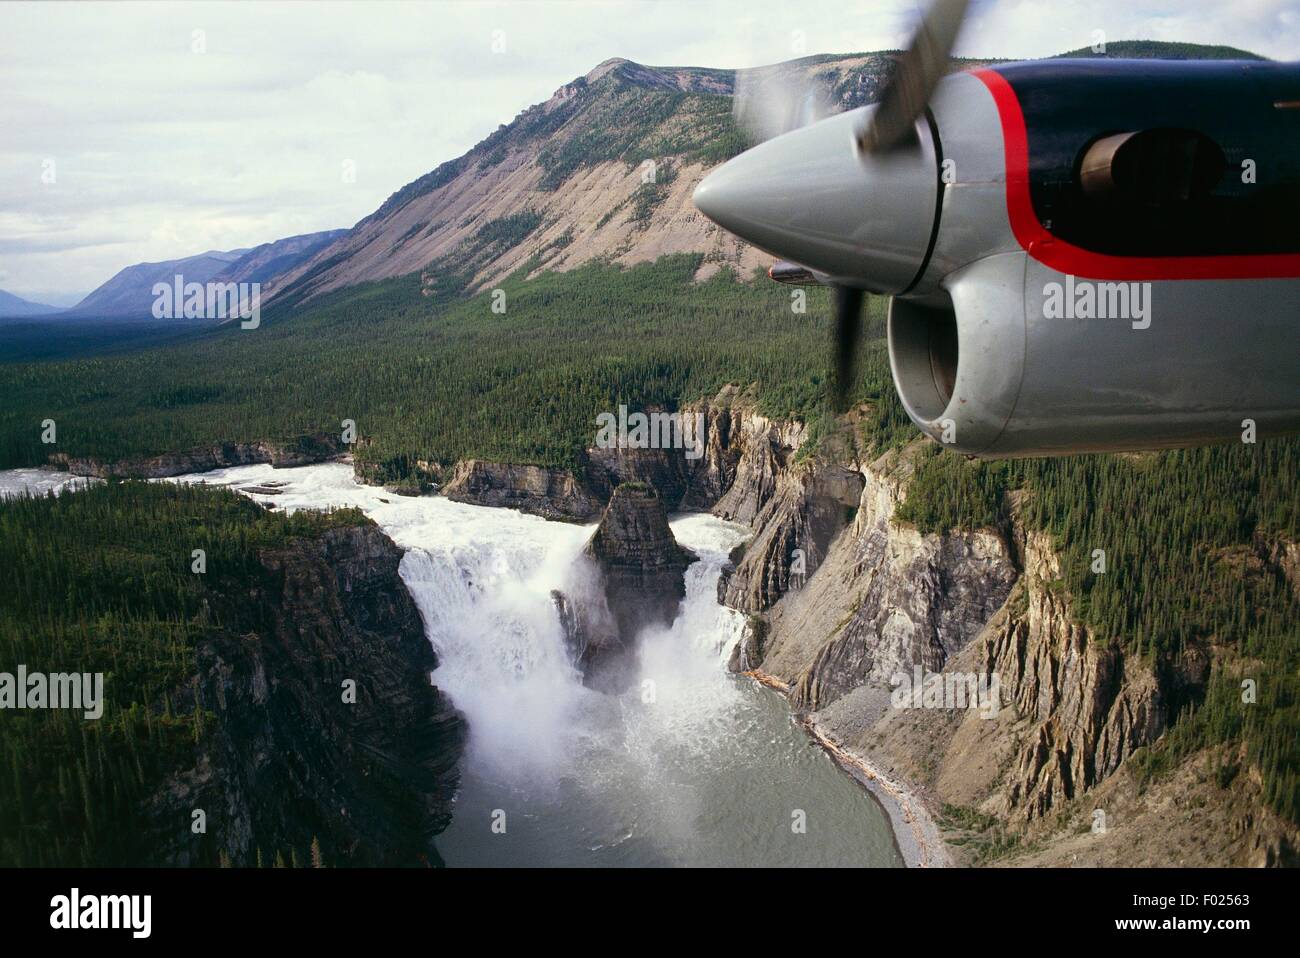 Vue aérienne de la chute Virginia, la réserve de parc national Nahanni (Liste du patrimoine mondial de l'UNESCO, 1978) - Territoires du Nord-Ouest, Canada Banque D'Images